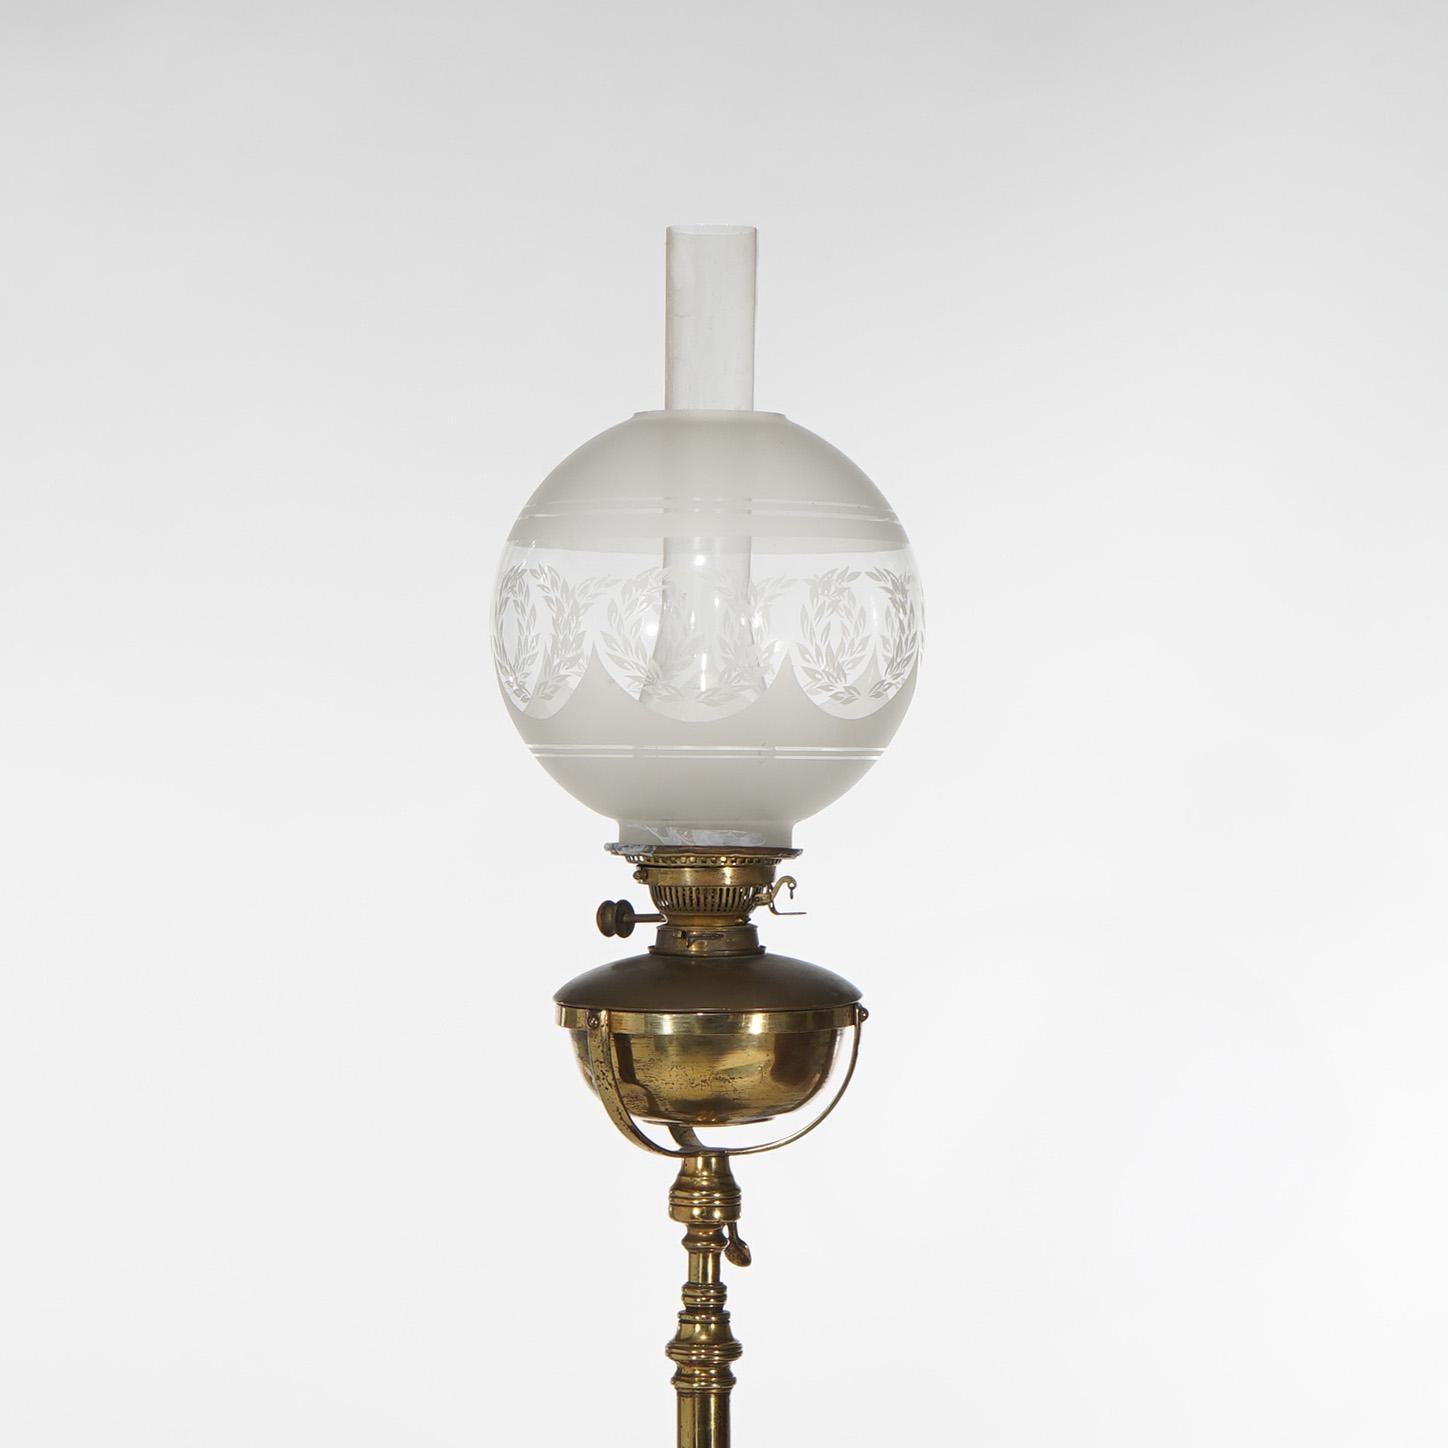 Lampadaire de piano néoclassique Hinks's en acajou et laiton avec abat-jour en verre opalescent conçu pour les couronnes de laurier C1890

Dimensions - 73,5 